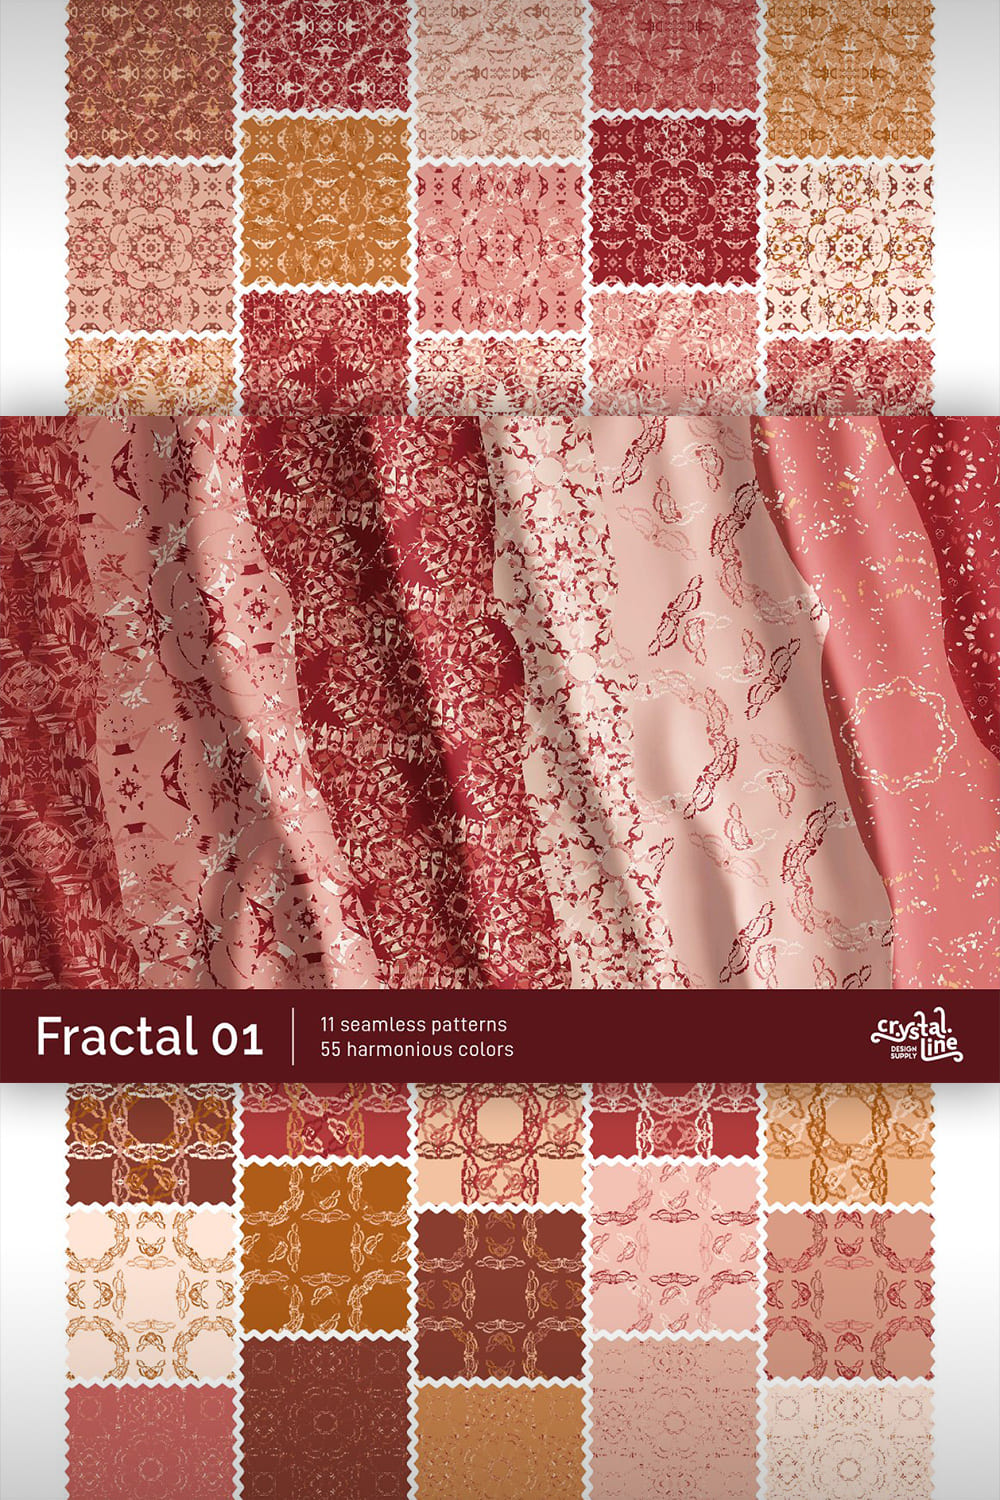 Fractal Patterns 01 pinterest image.